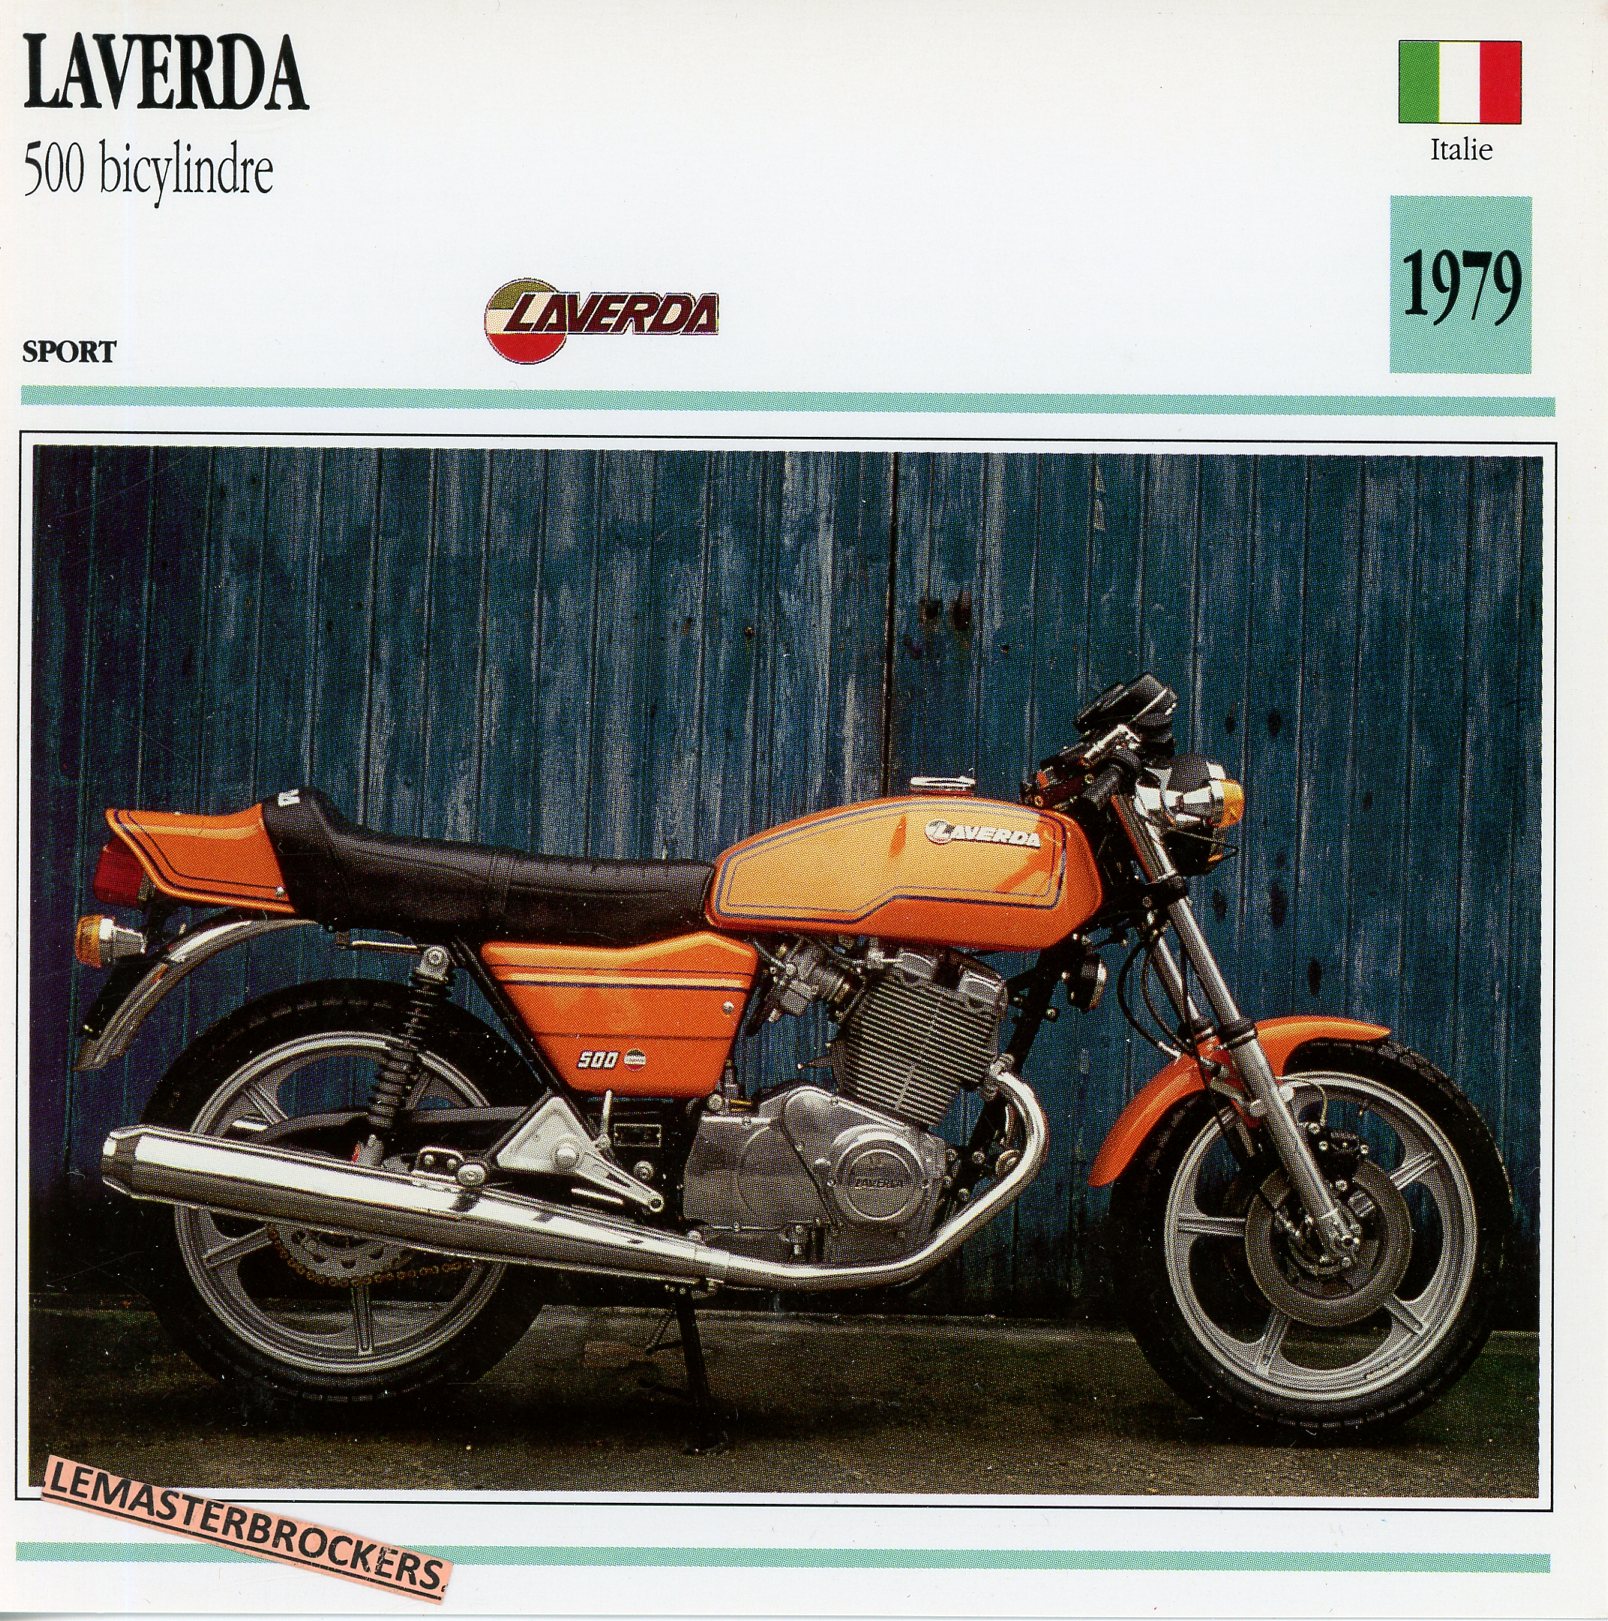 LAVERDA 500 BICYLINDRE 1979 - FICHE MOTO ATLAS COLLECTION